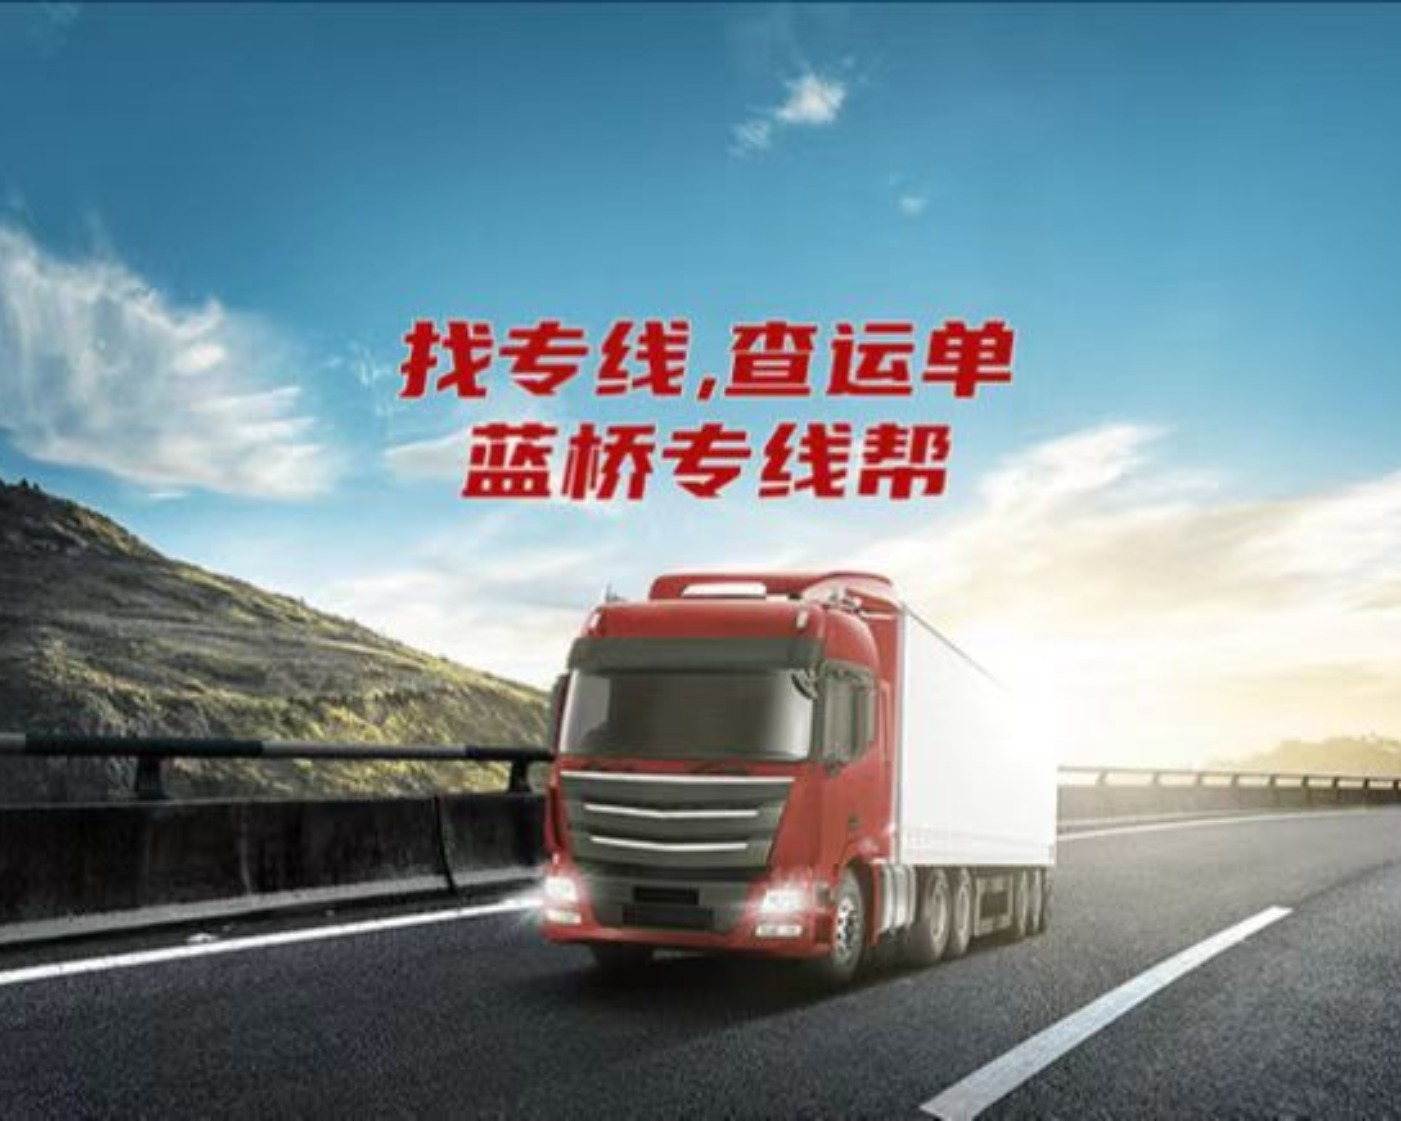 天津怀行物流有限公司的专线公司的形象展示LOGO